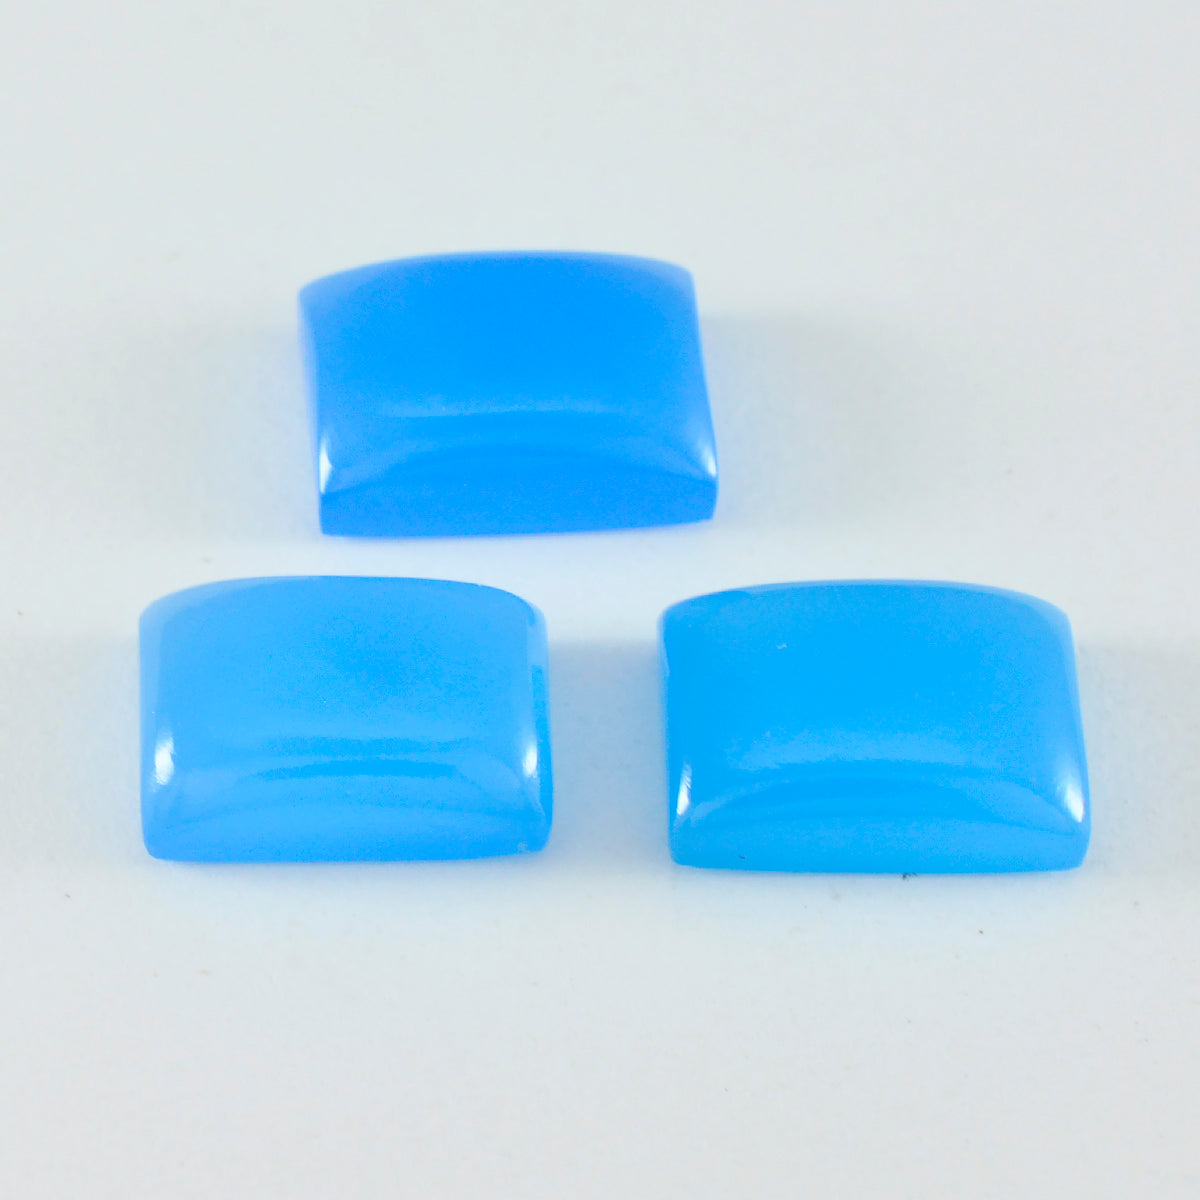 riyogems 1 шт. синий халцедон кабошон 10х14 мм восьмиугольной формы красивый качественный камень